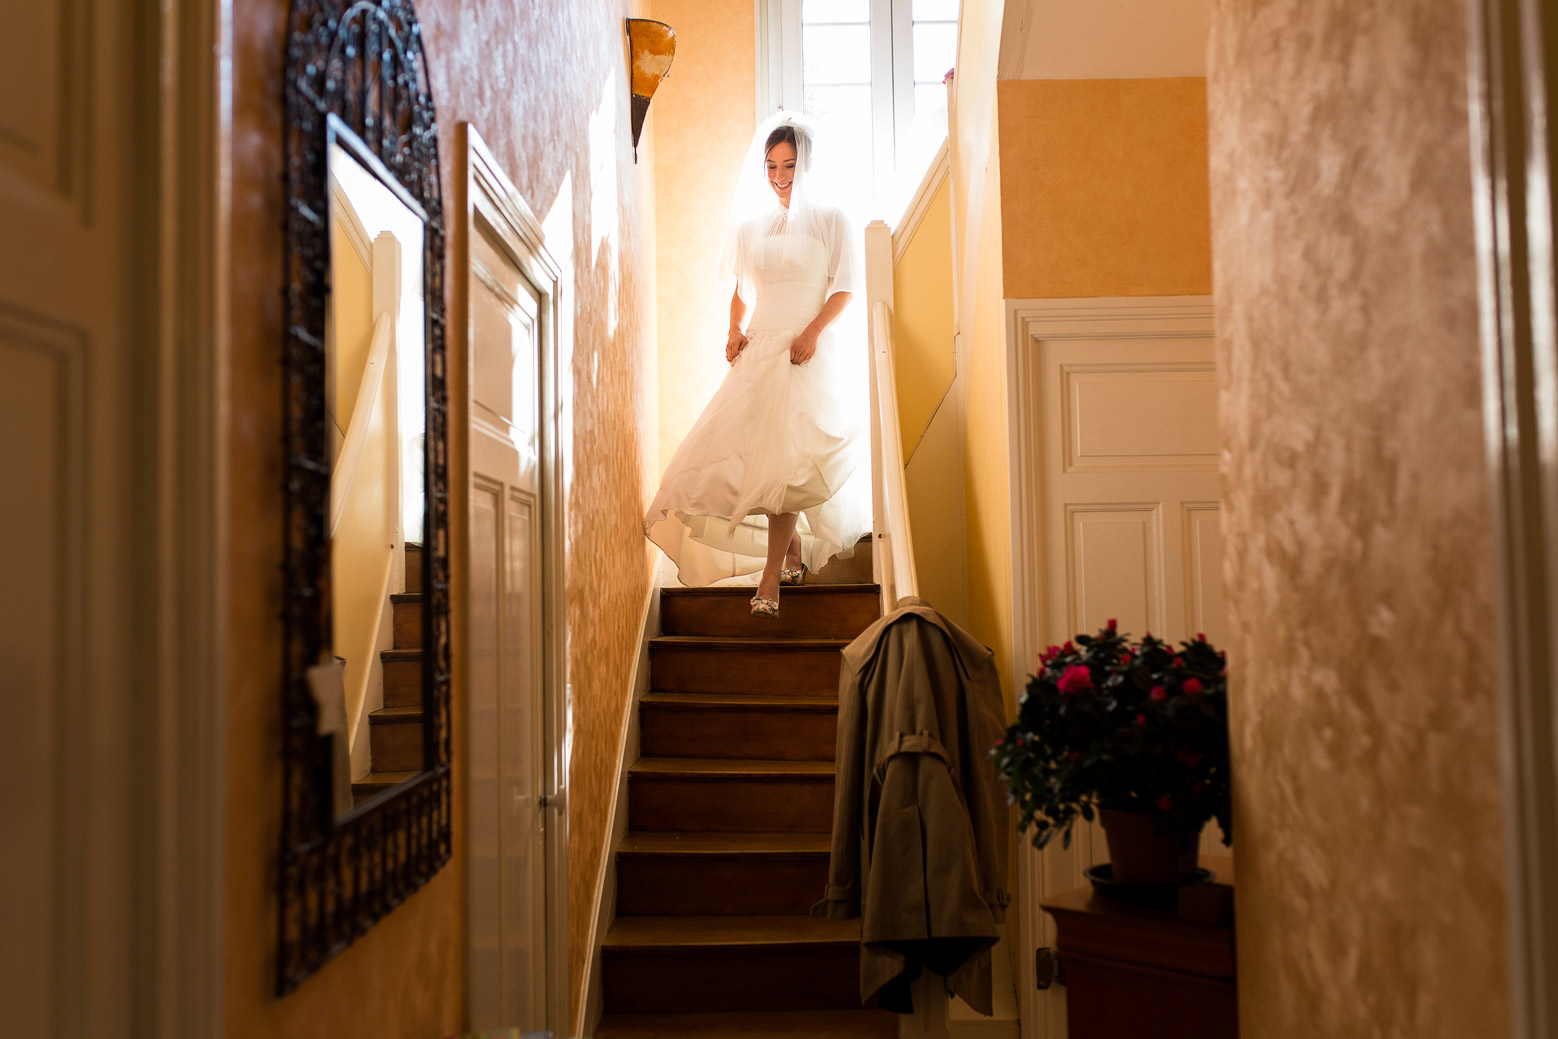 Hotel Royal Saint Mart Royat Clermont Ferrand Descente d'escalier de la mariée